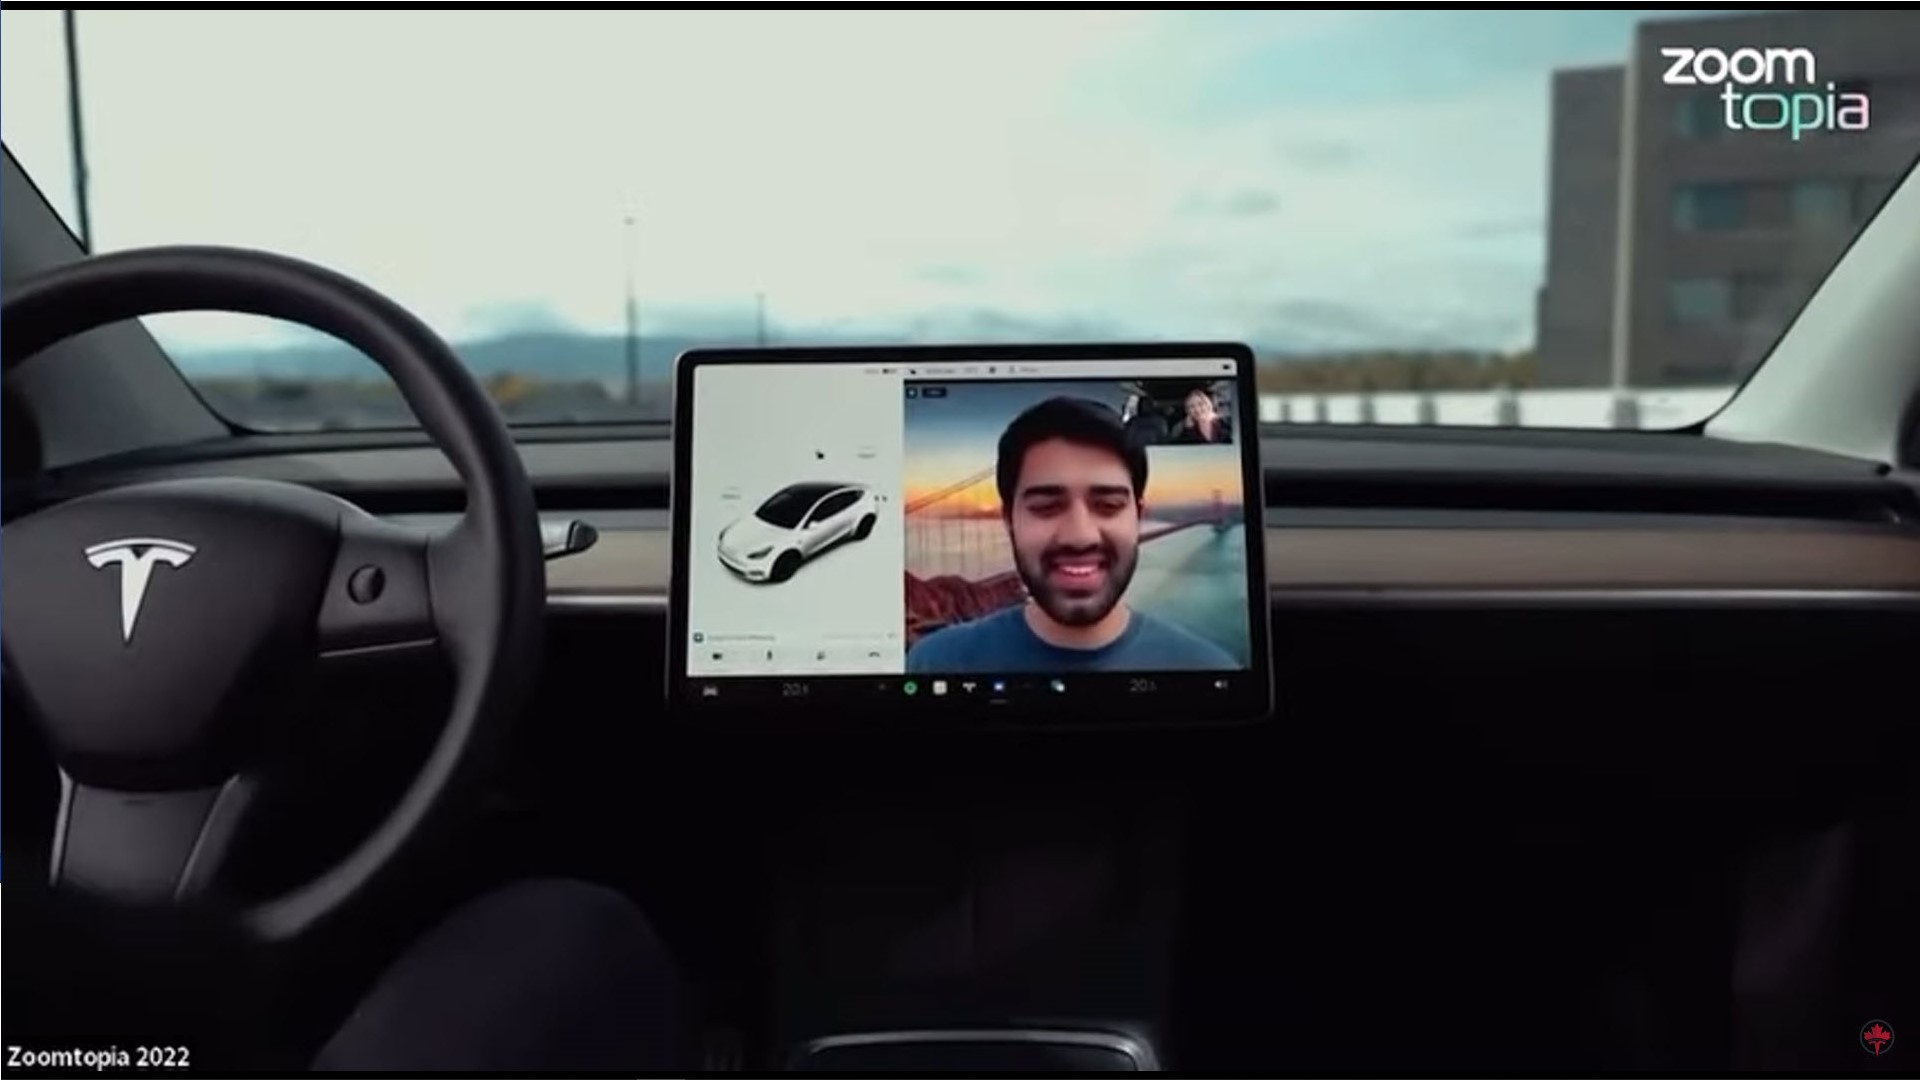 Zoom จะอนุญาตให้ผู้ขับขี่รถยนต์ Tesla สนทนาด้วยวิดีโอคอล